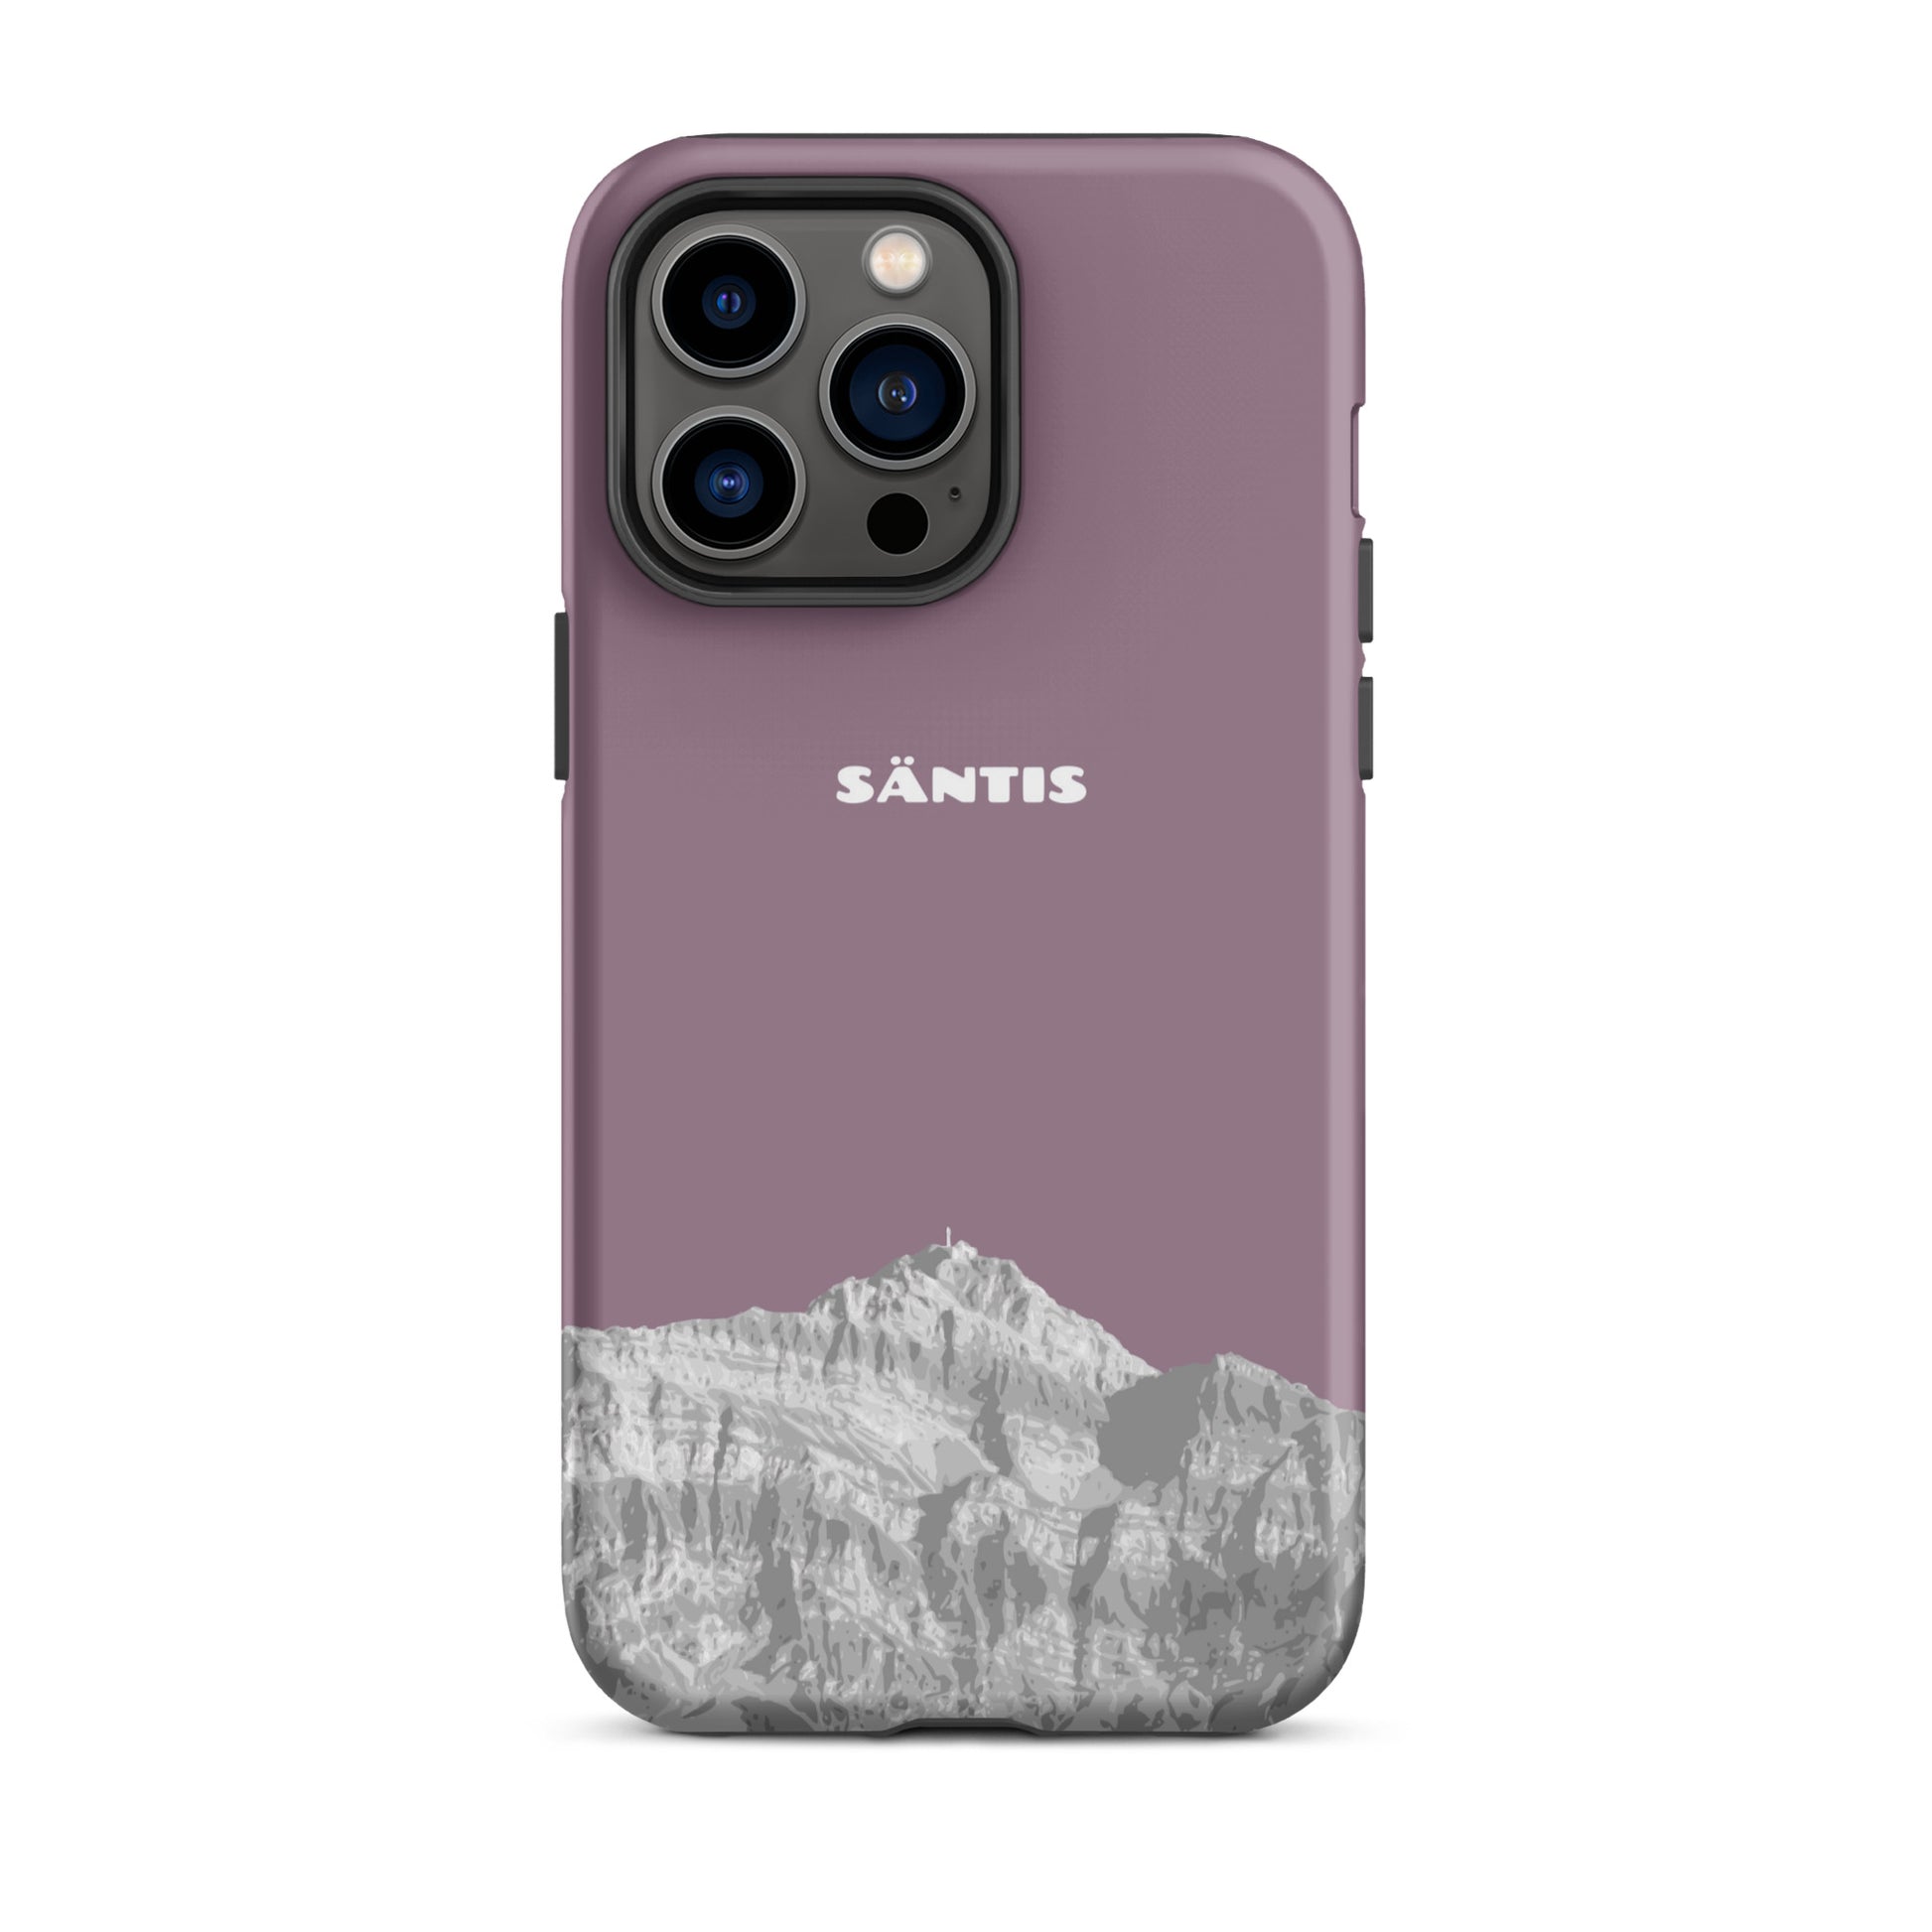 Hülle für das iPhone 14 Pro Max von Apple in der Farbe Pastellviolett, dass den Säntis im Alpstein zeigt.